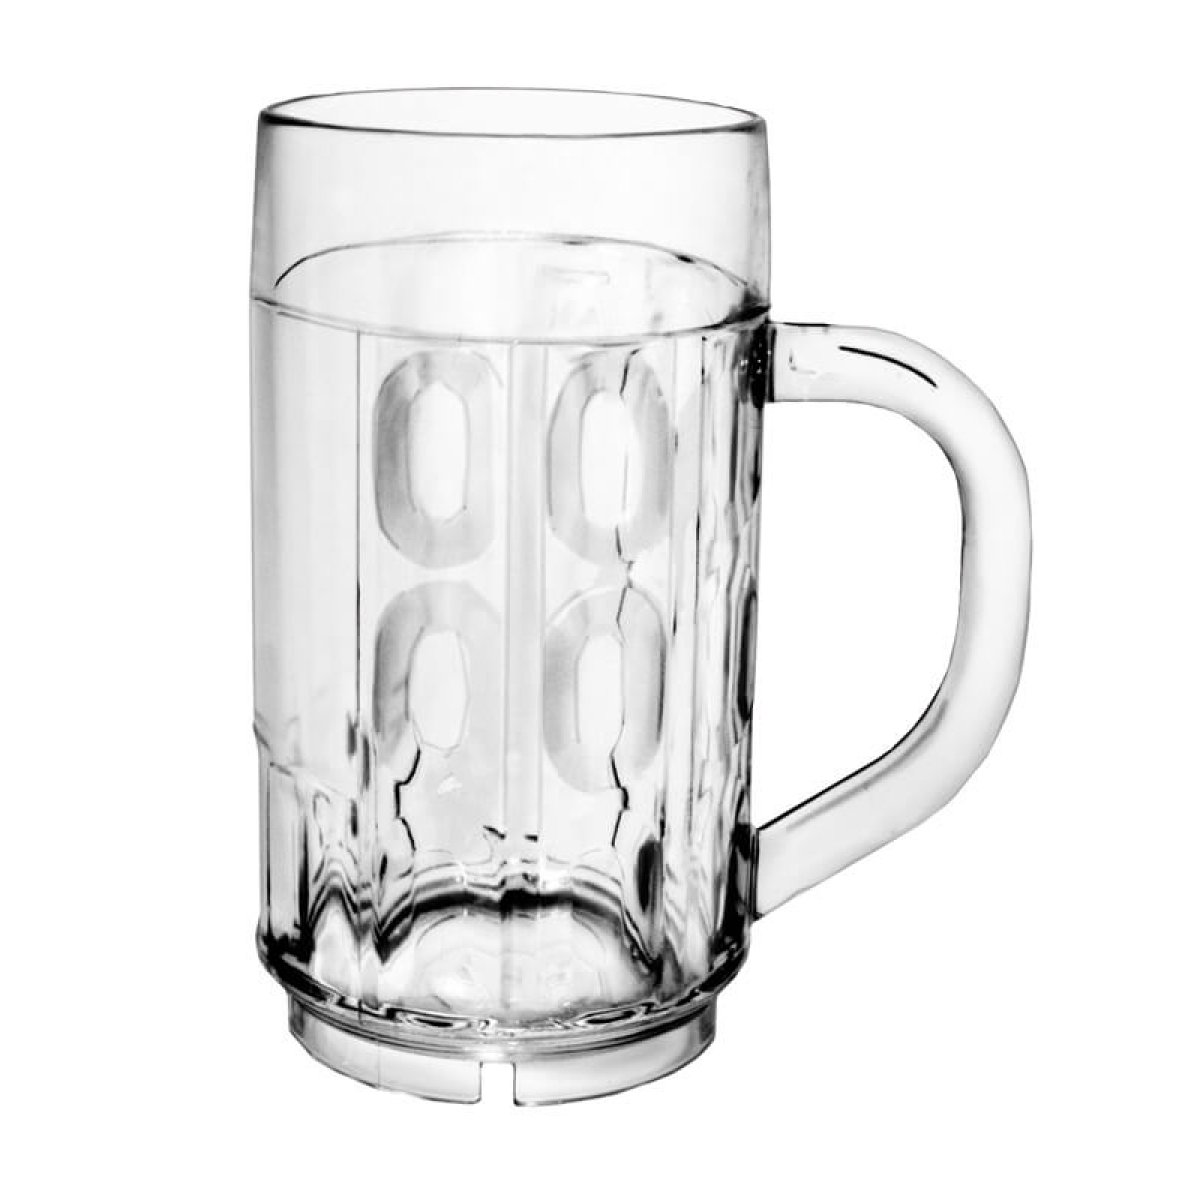 PS 0,3l glasklar Plastikgläser Biergläser Kölsch 500 Gläser für Longdrinks 